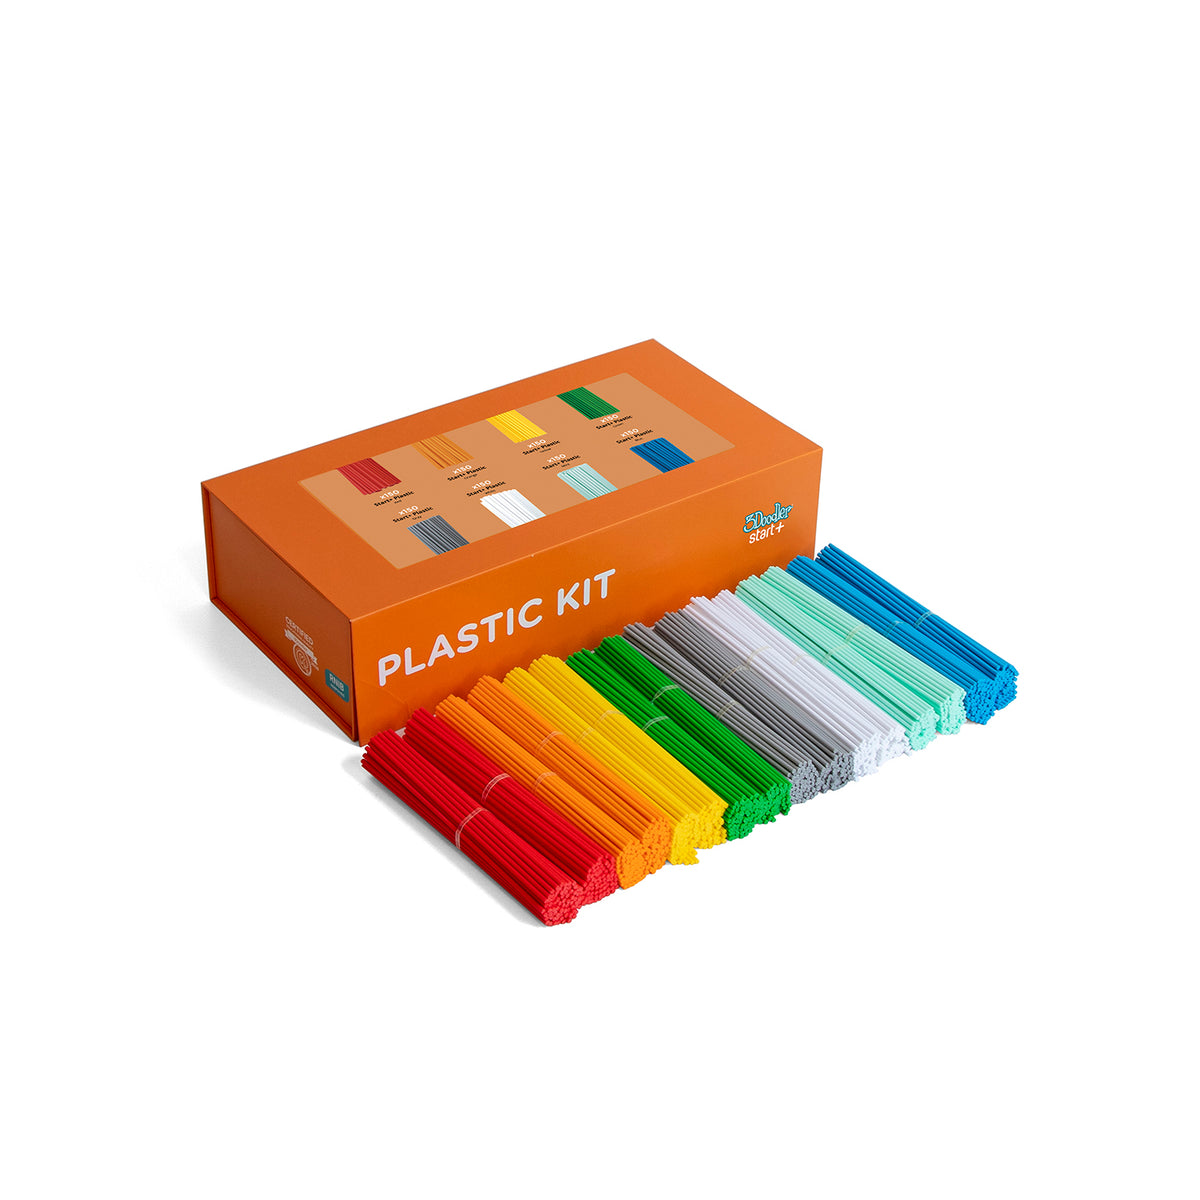 3Doodler EDU Start+ Learning Pack Plastic Kit, 1200 Strands - EDU Plastic